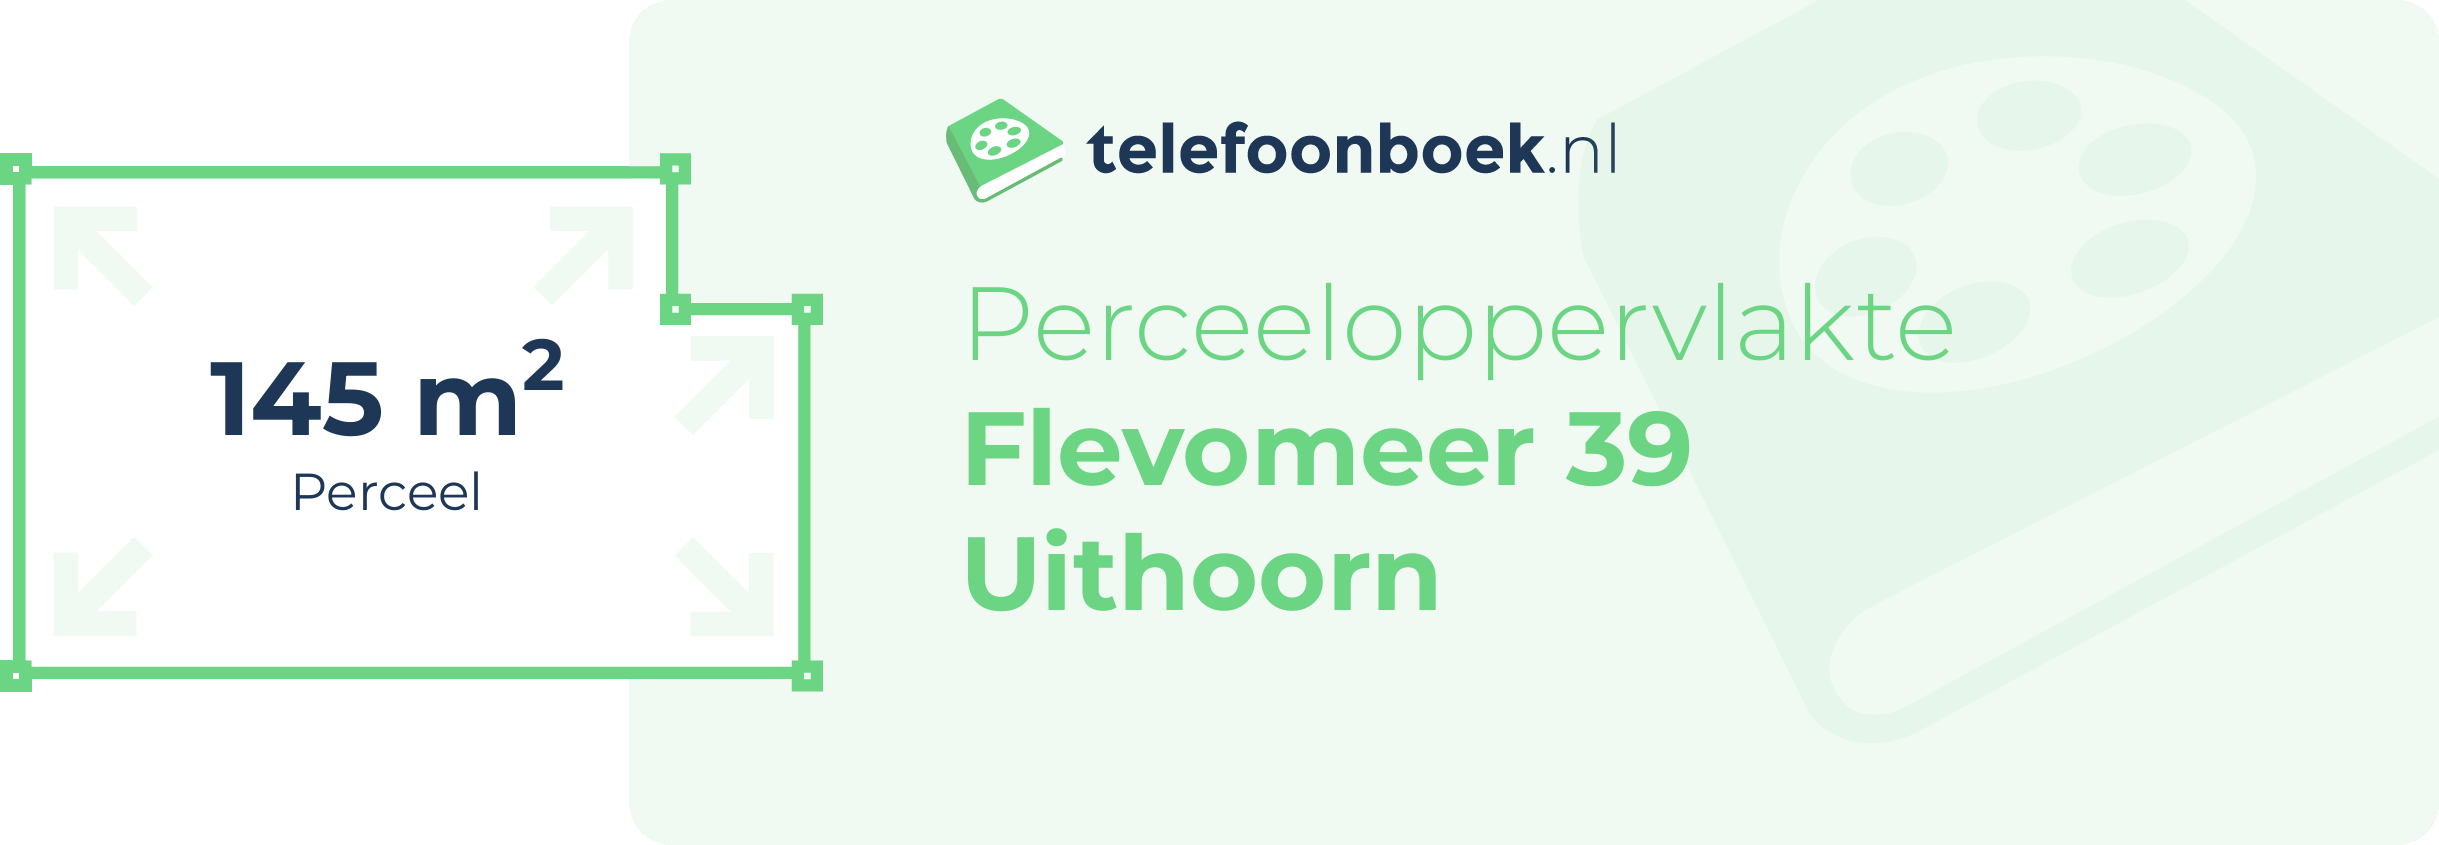 Perceeloppervlakte Flevomeer 39 Uithoorn